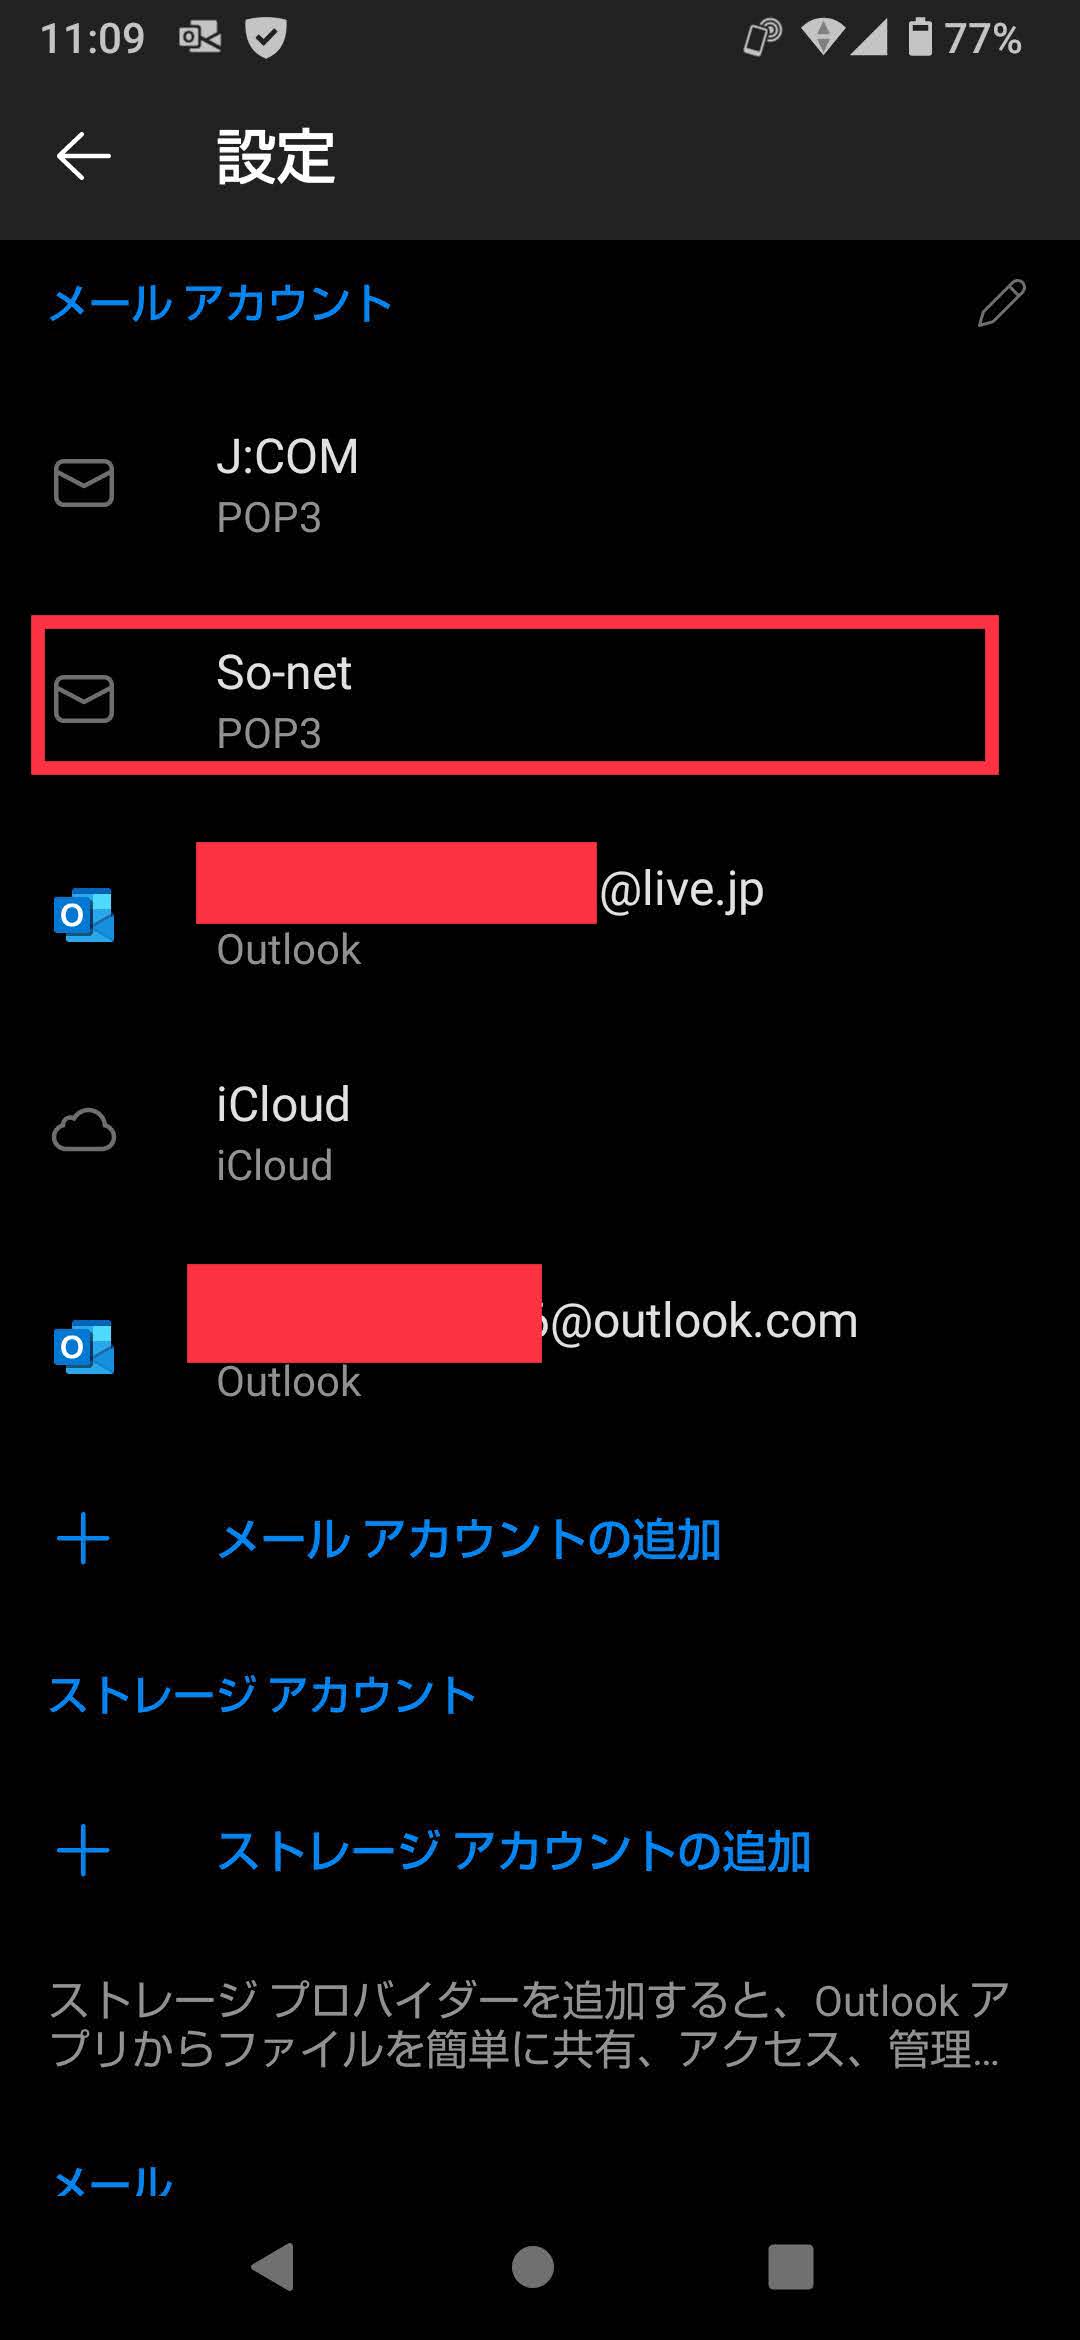 Android Outlook で特定のメアドで送信できない件について サポートが対応してくれない マイクロソフト コミュニティ